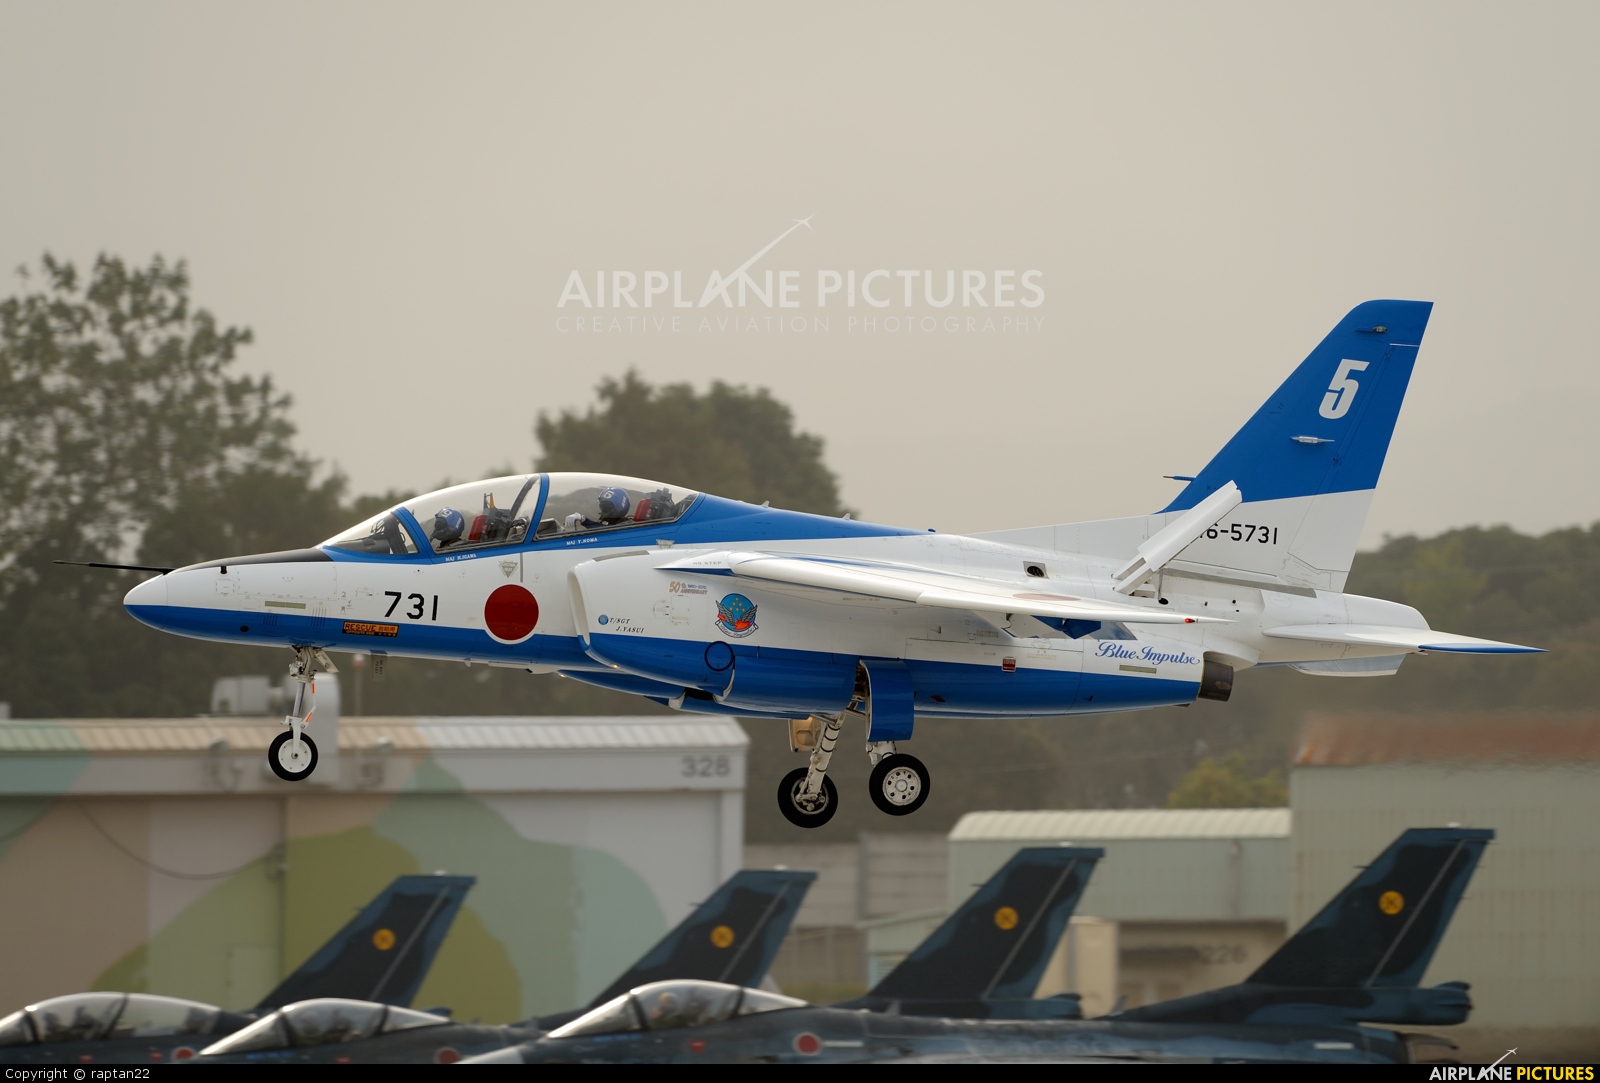 Japan - ASDF: Blue Impulse 46-5731 aircraft at Tsuiki AB